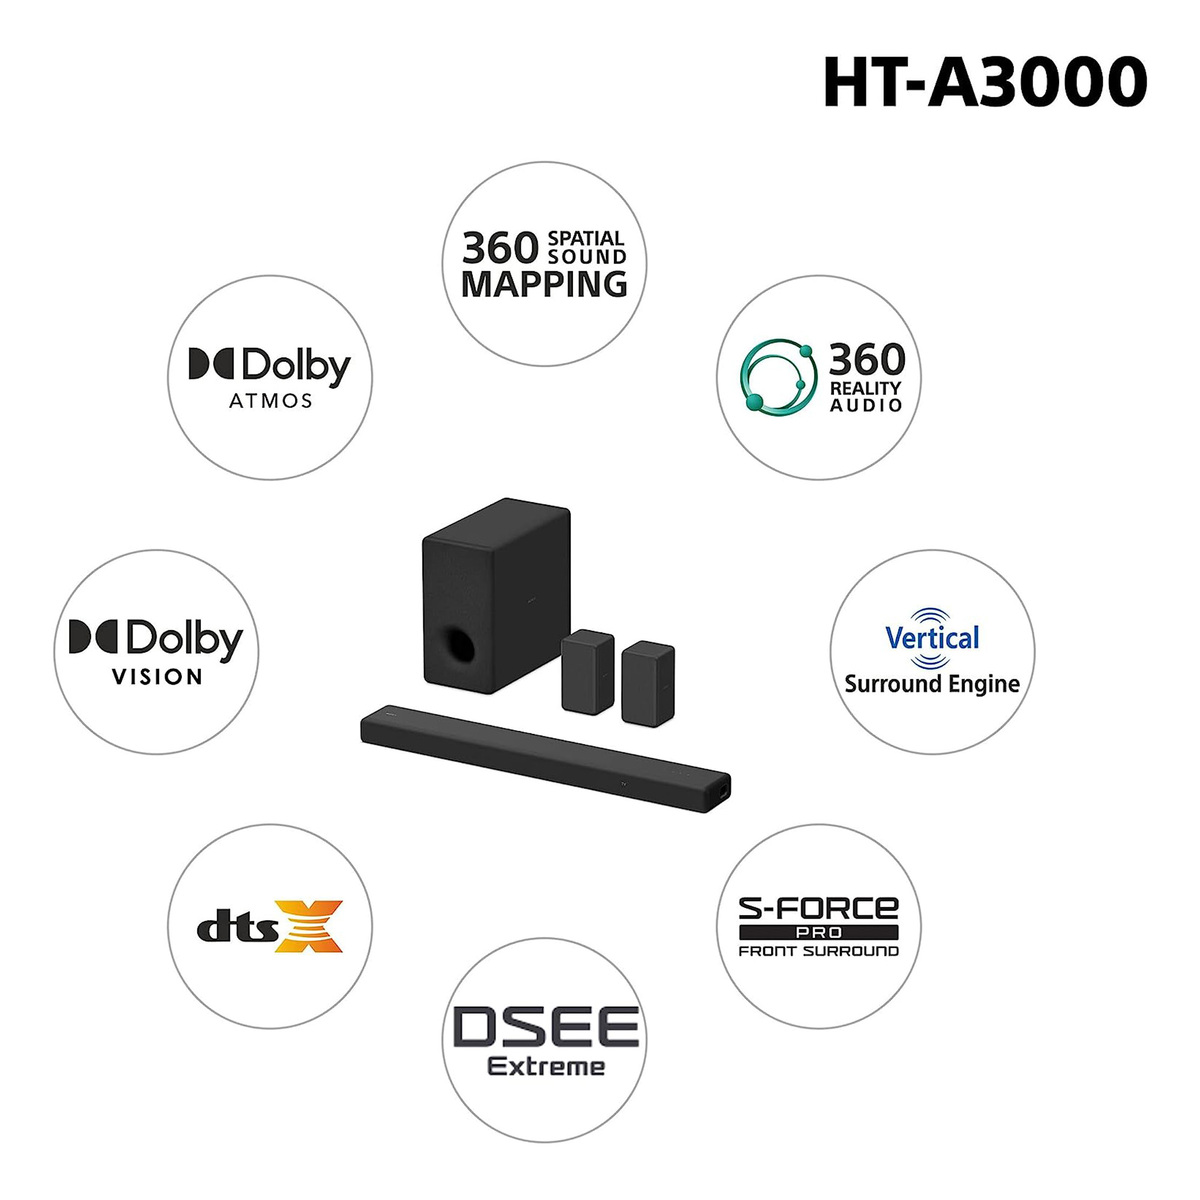 Sony 250 W 3.1Ch 360SSM Bluetooth Soundbarwith Dolby Atmos, Black, HT-A3000